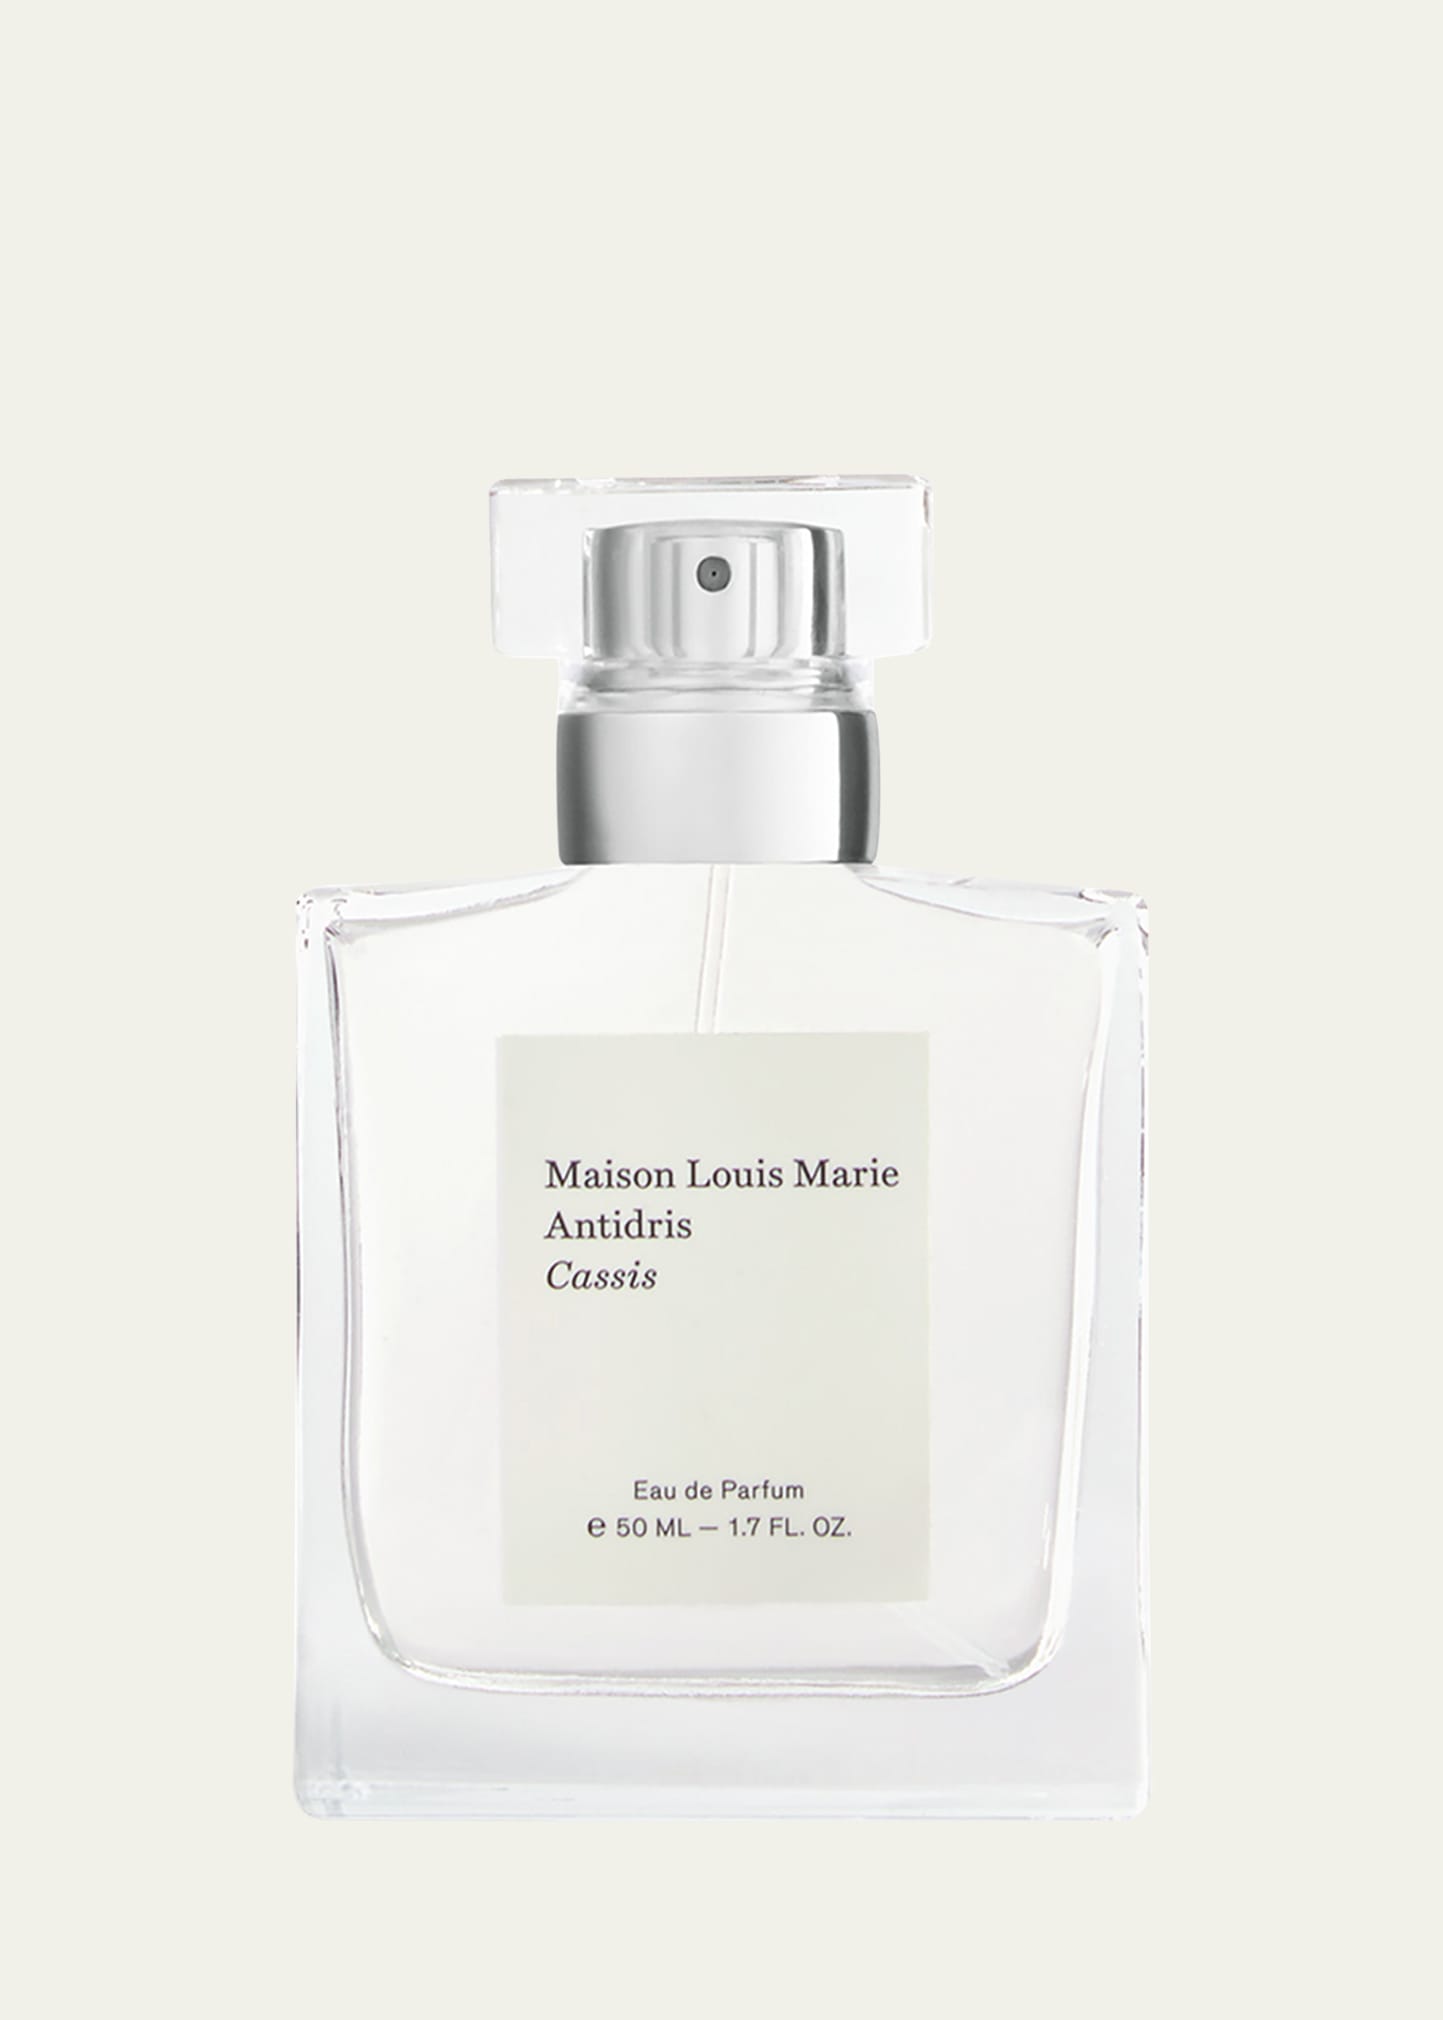 Maison Louis Marie 1.7 oz. Antidris Cassis Eau de Parfum